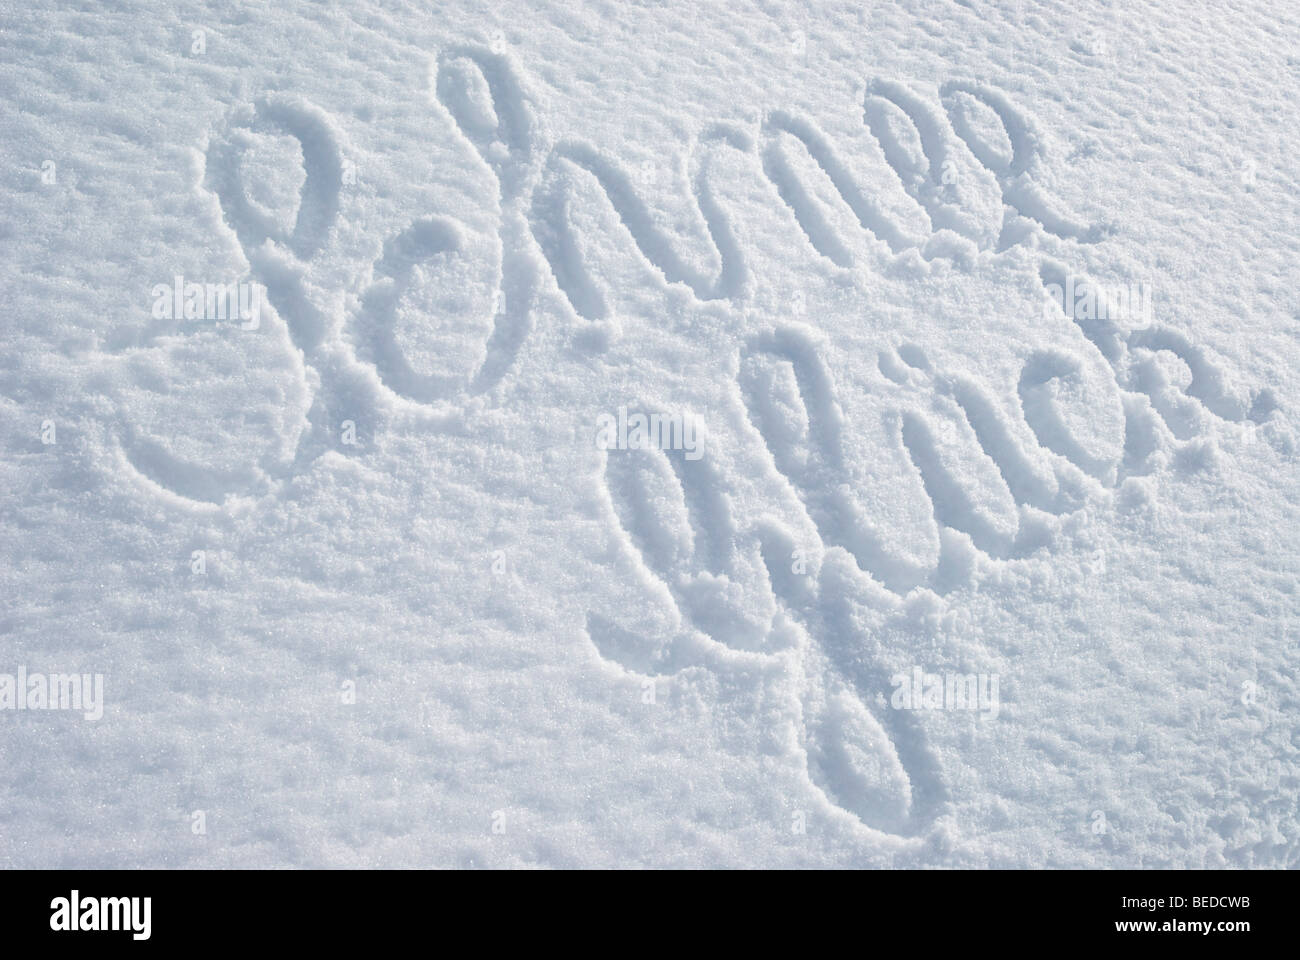 La parola Schnee-Glueck, felicità della neve, scritta su una coperta di neve intatta Foto Stock